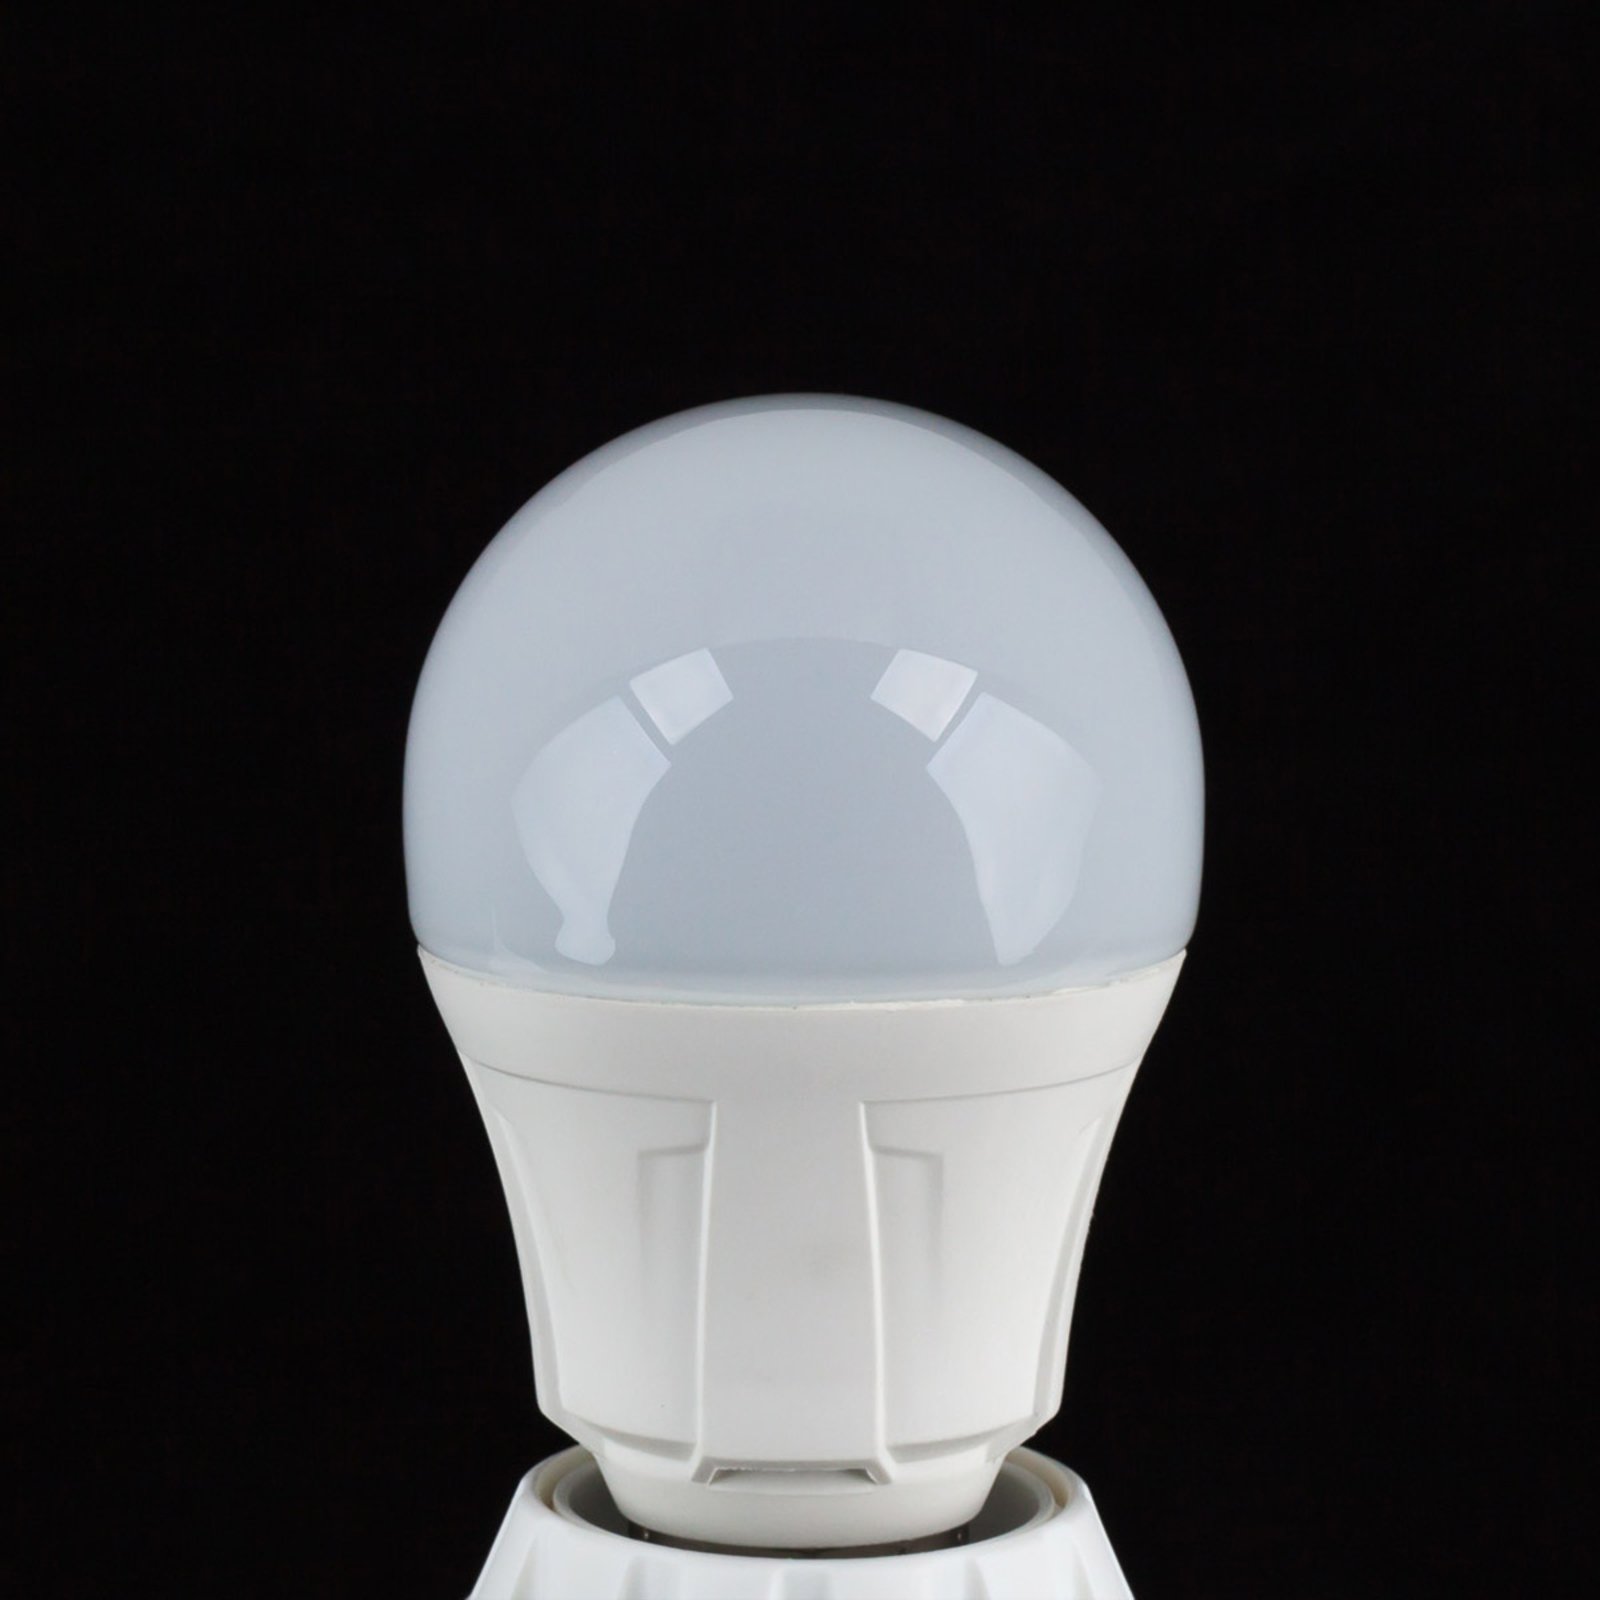 E27 8,5W 830 LED a lampadina bianco caldo